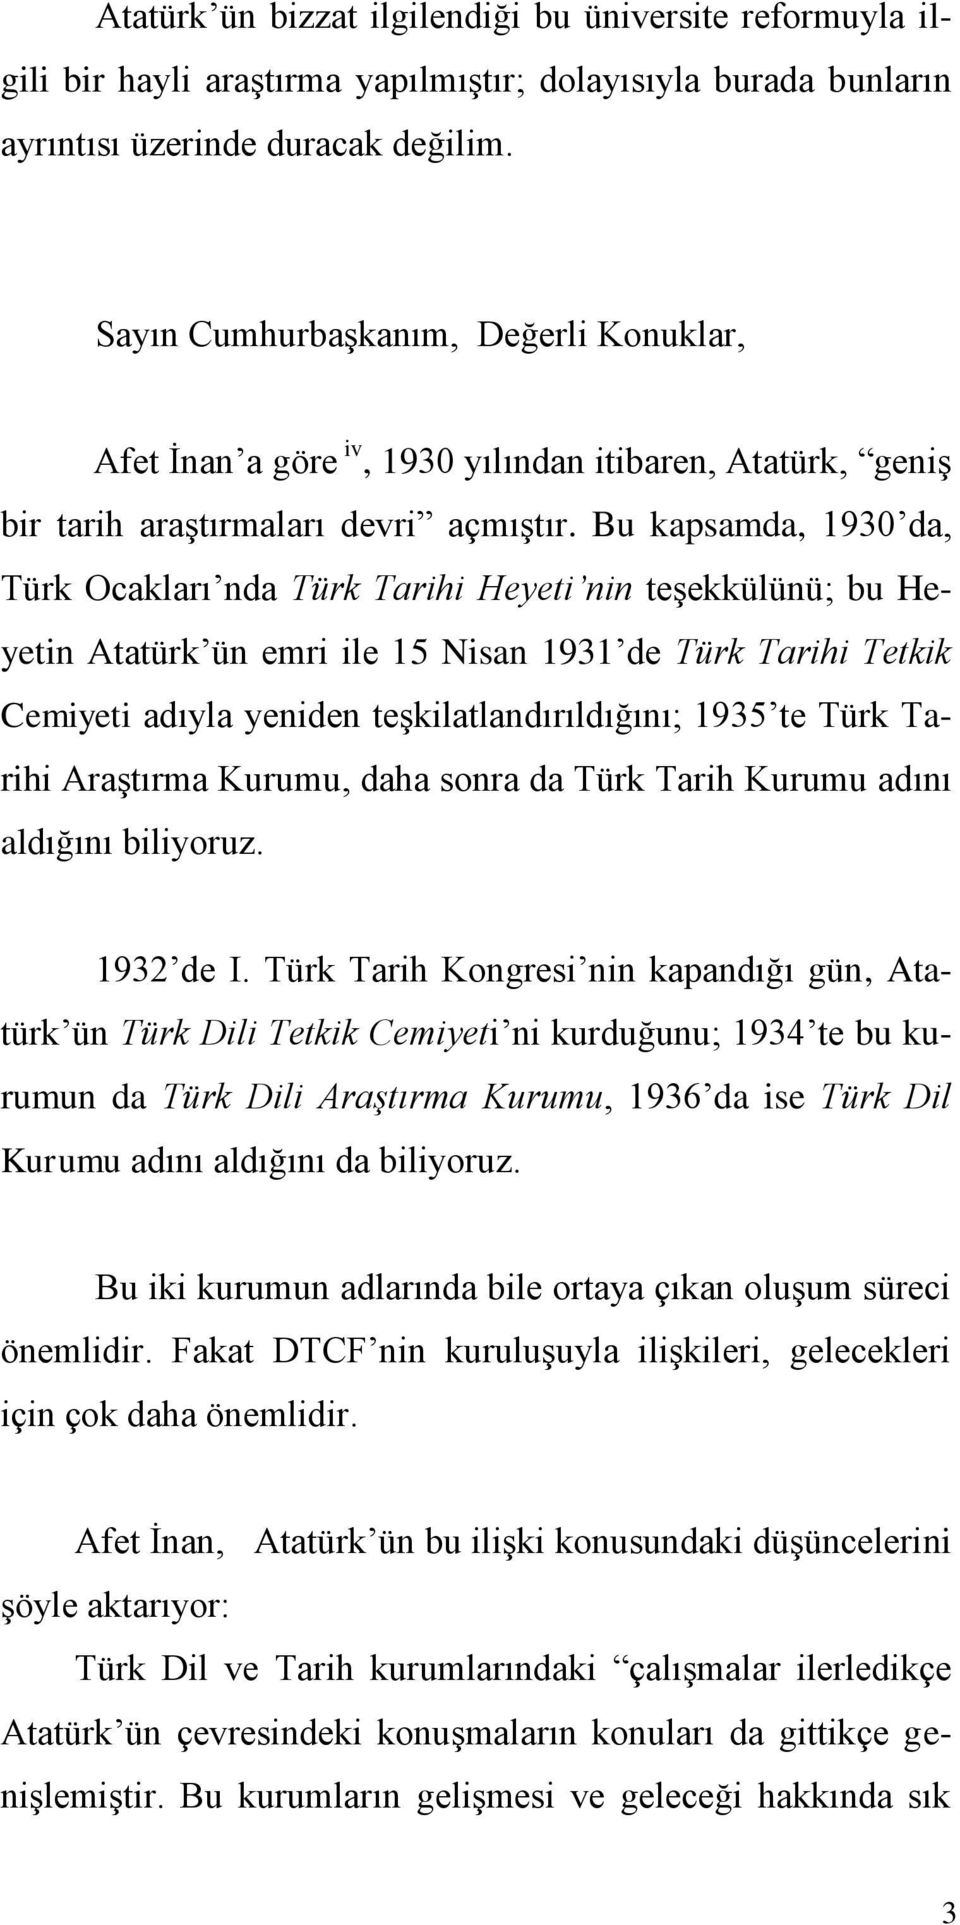 Bu kapsamda, 1930 da, Türk Ocakları nda Türk Tarihi Heyeti nin teşekkülünü; bu Heyetin Atatürk ün emri ile 15 Nisan 1931 de Türk Tarihi Tetkik Cemiyeti adıyla yeniden teşkilatlandırıldığını; 1935 te